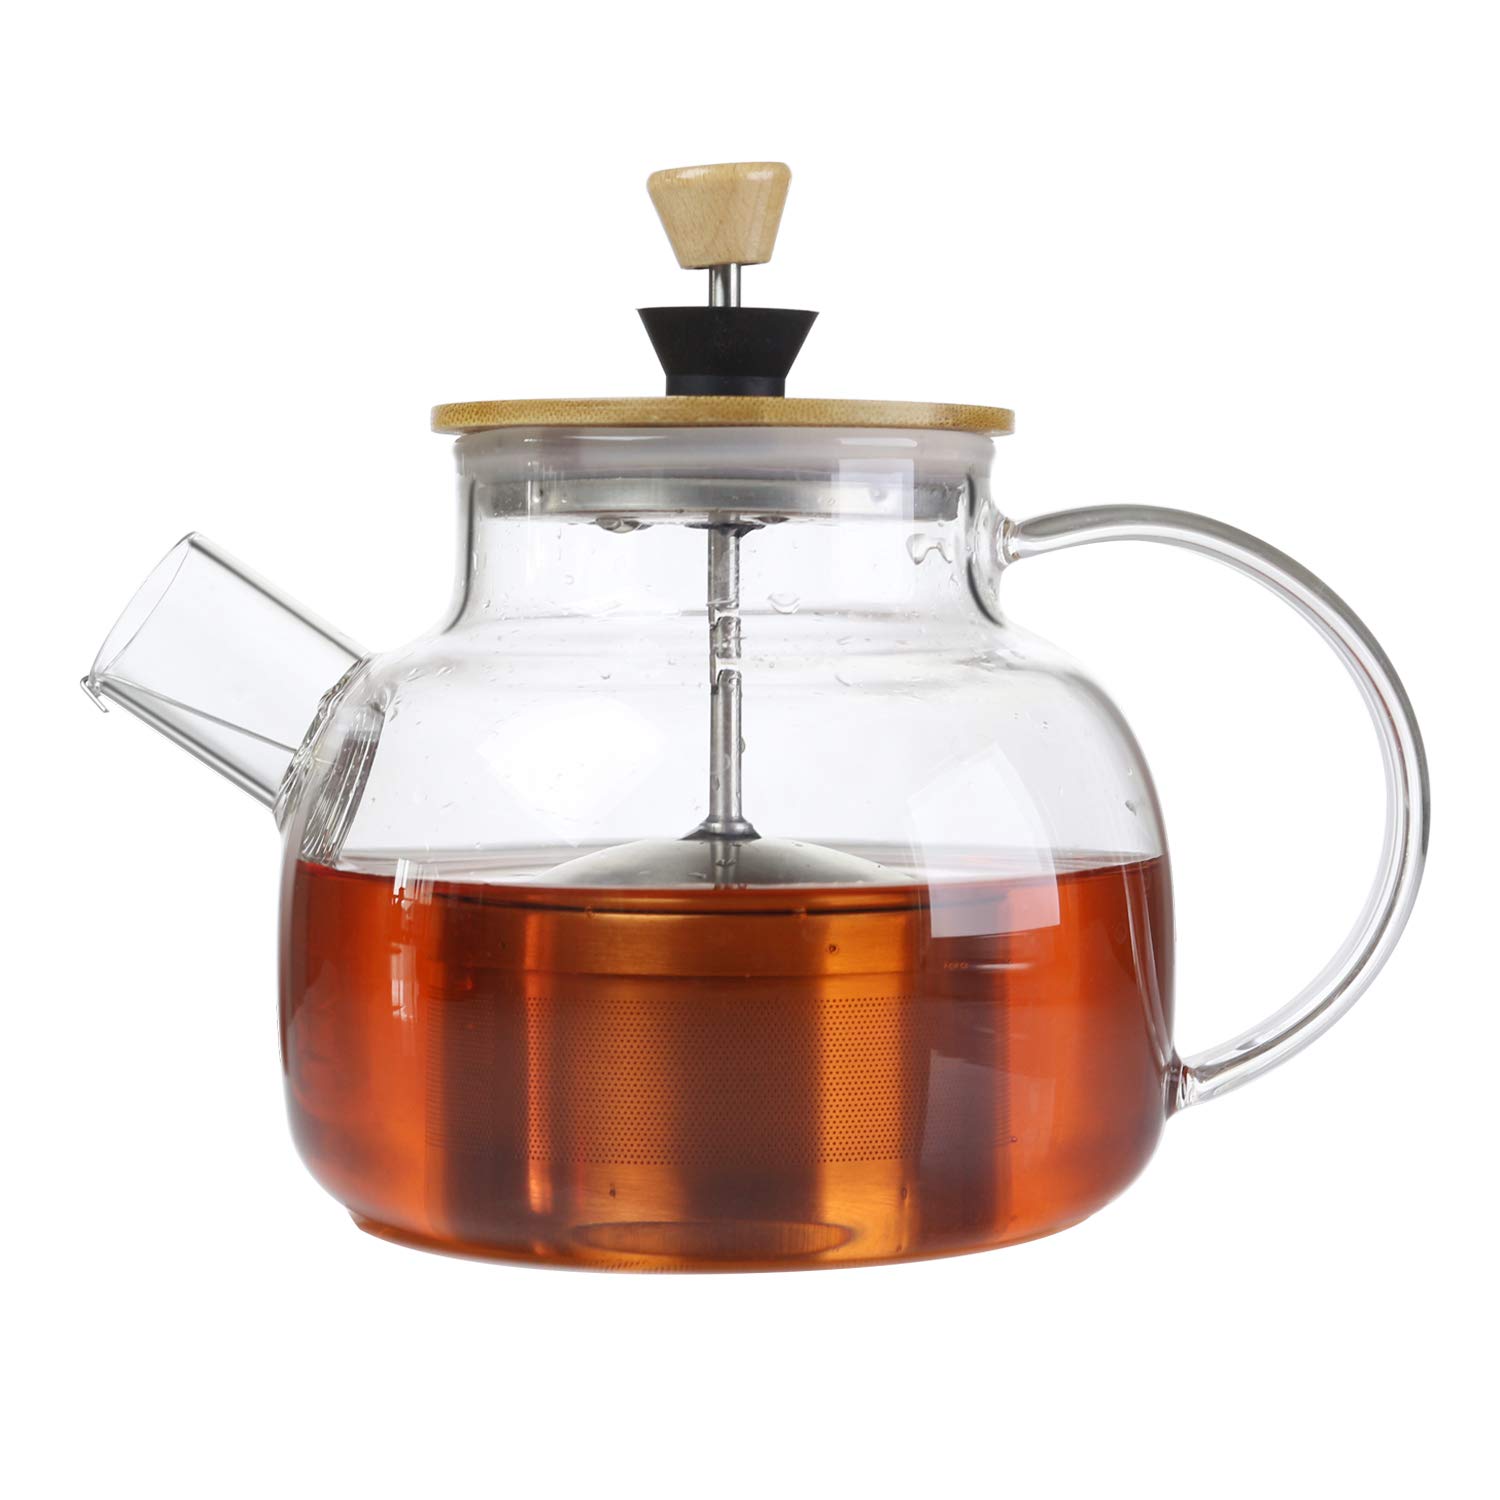 IDEALUX Glas-Teekanne mit Bambusdeckel und SUS304 Edelstahl-Tee-Ei-Filter, 963 ml, Herd-sicherer Teekessel für losen Tee